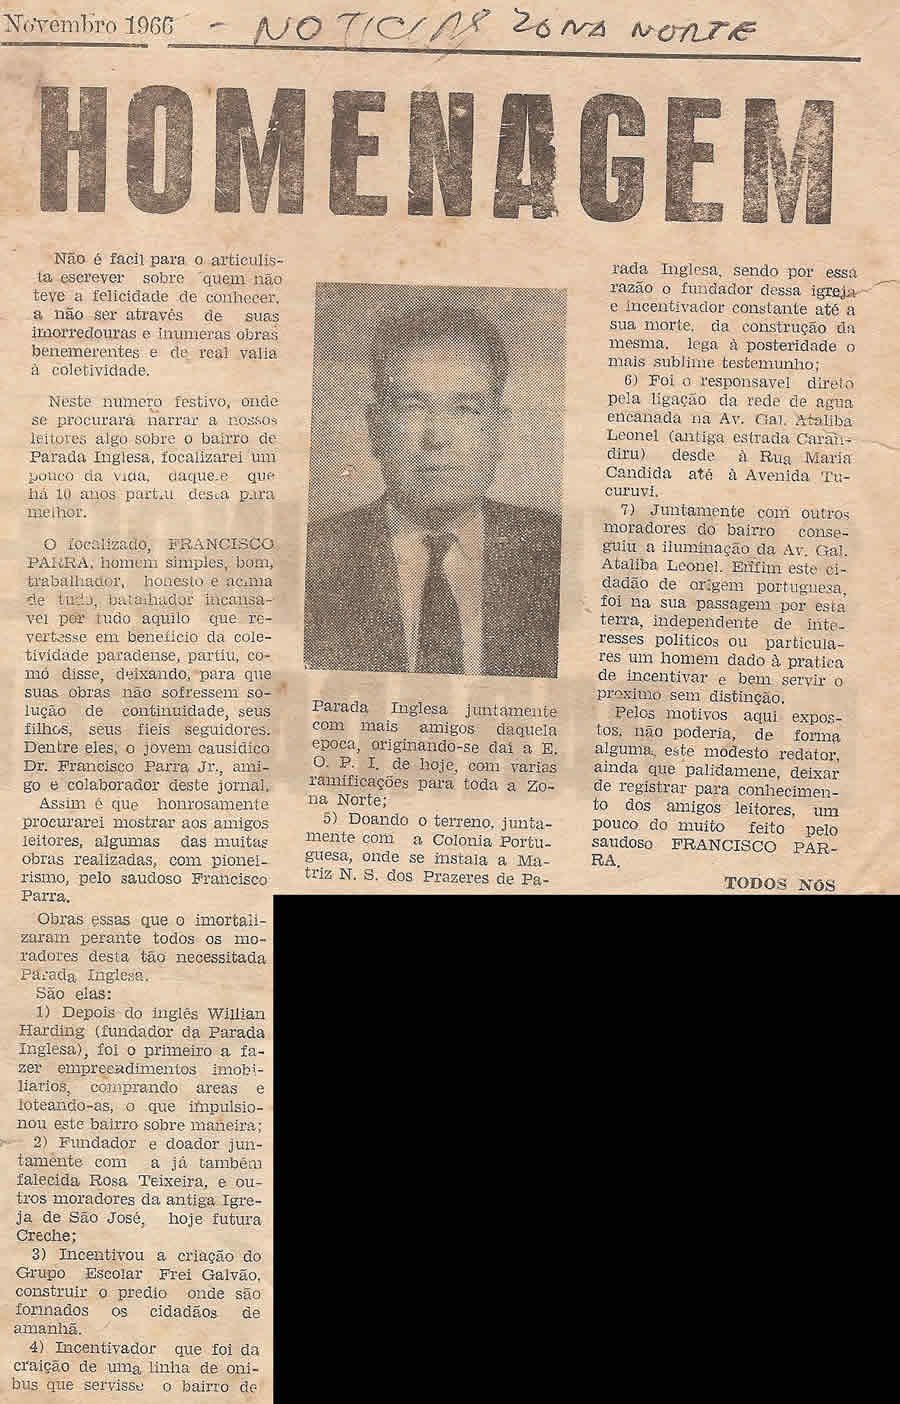 Matéria publicada no jornal Noticias da Zona Norte em 1966 para homenagear Francisco Parra e bairro Parada Inglesa